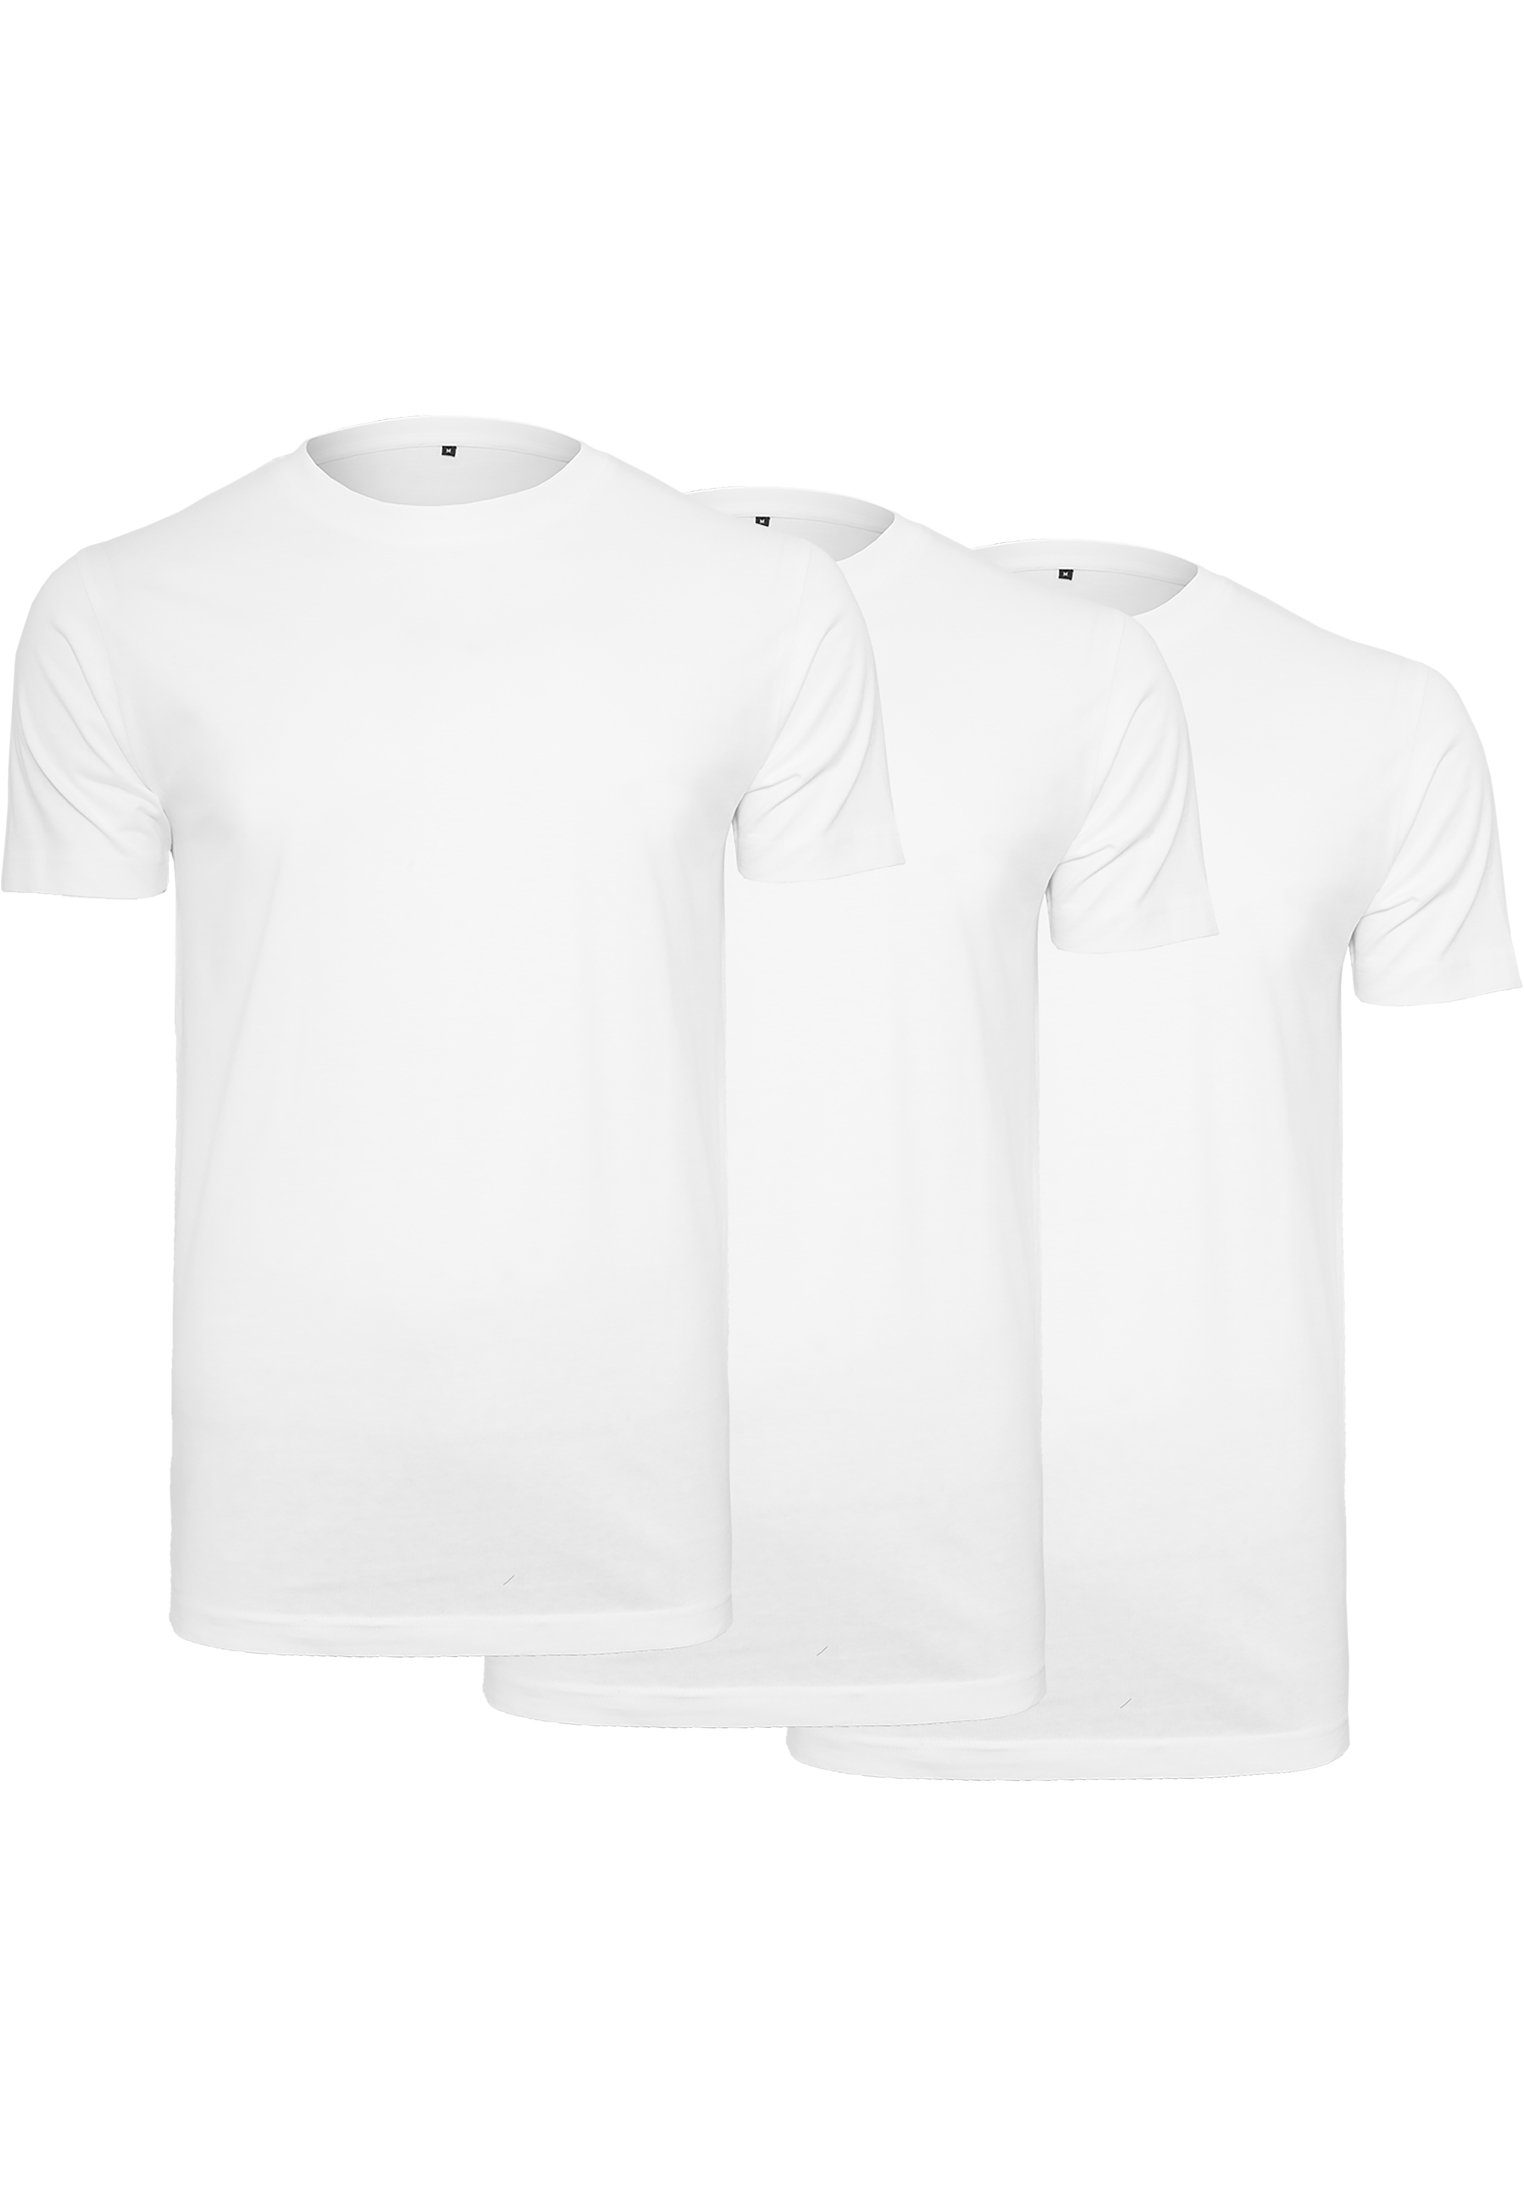 SHIRT-GALERIE T-Shirt TS 3er